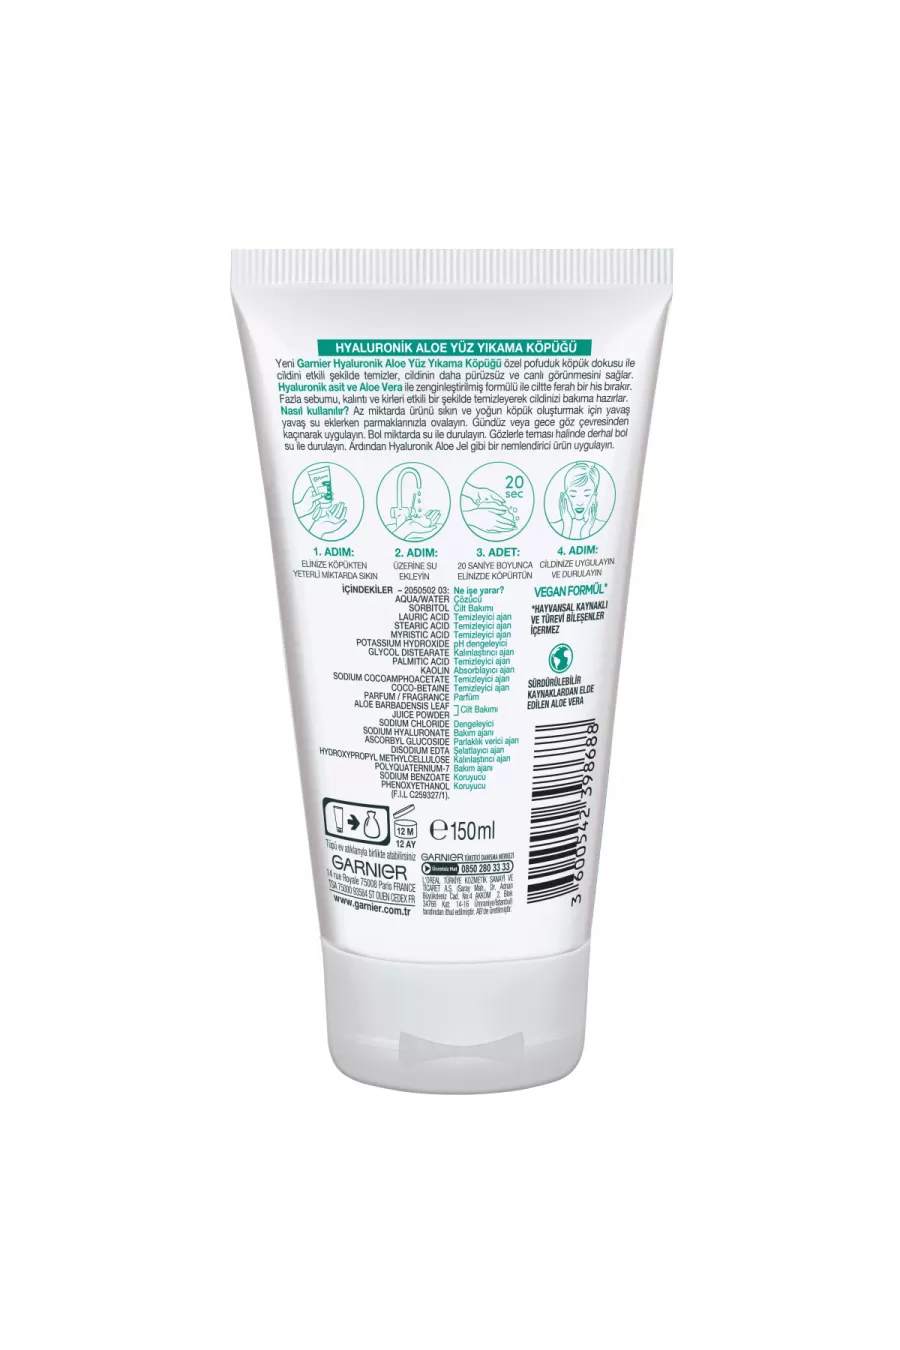 مناسب برای پوست نرمال و حساس آبرسانی و مرطوب کننده پوست تمیز کننده منافذ گارنیر Garnier فوم هیالورونیک اسید